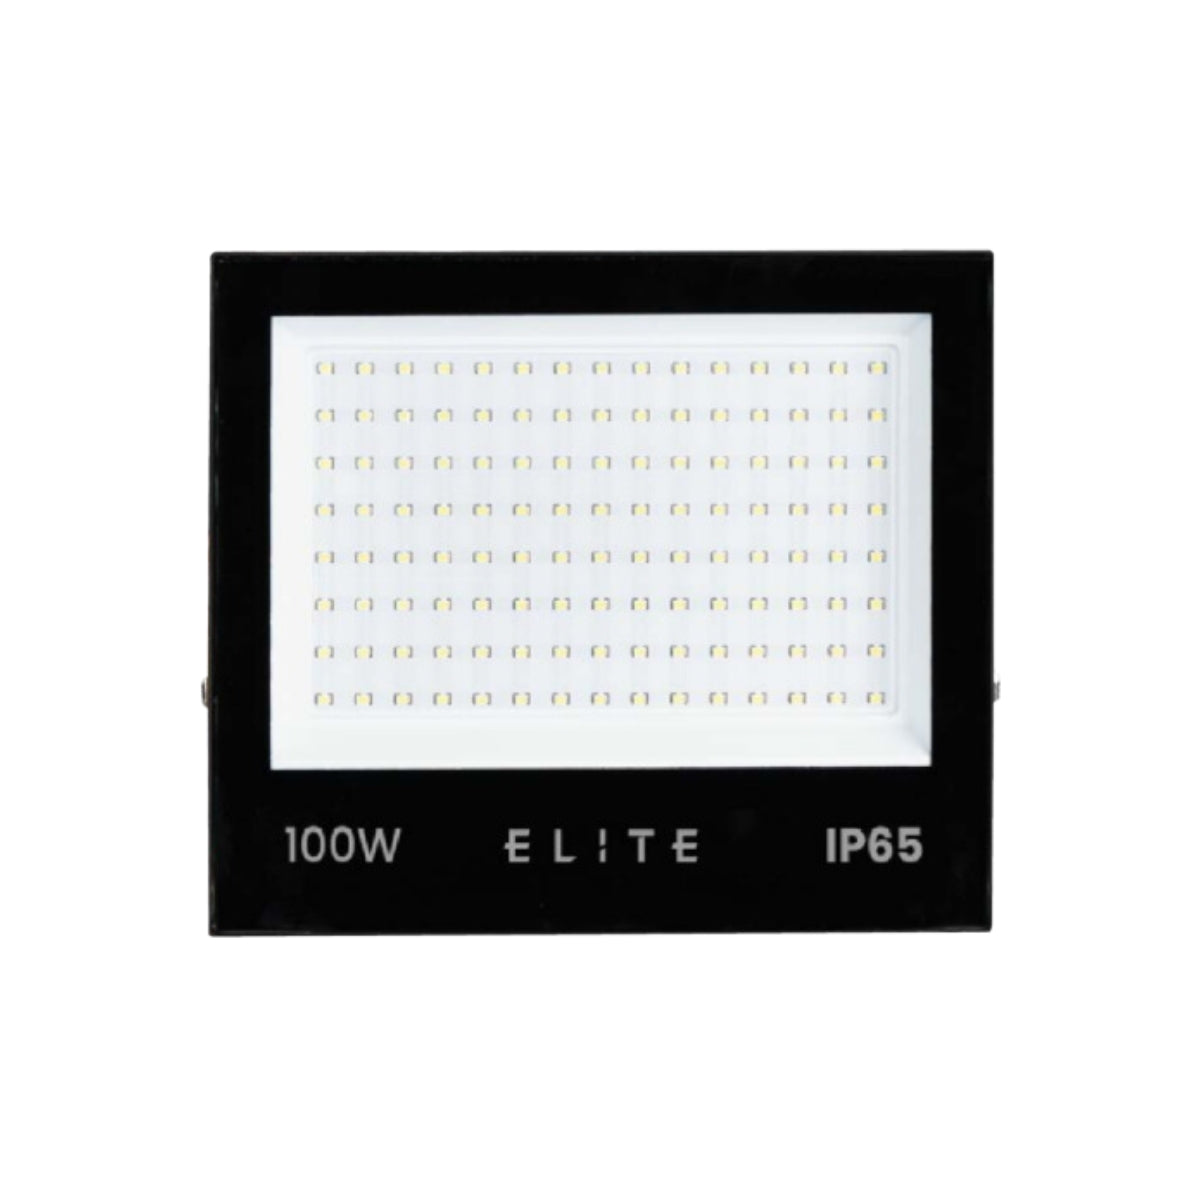 Reflector LED Tableta 100W Luz Blanca 6500K - Elite  IP: 65 Uso exterior  Vatios: 100W  Flujo luminoso: 8000Im  Indice de color: >80  Multipunto SMD   Horas de vida: 25000  ºC Máximos de trabajo -20ºC -50ºC   